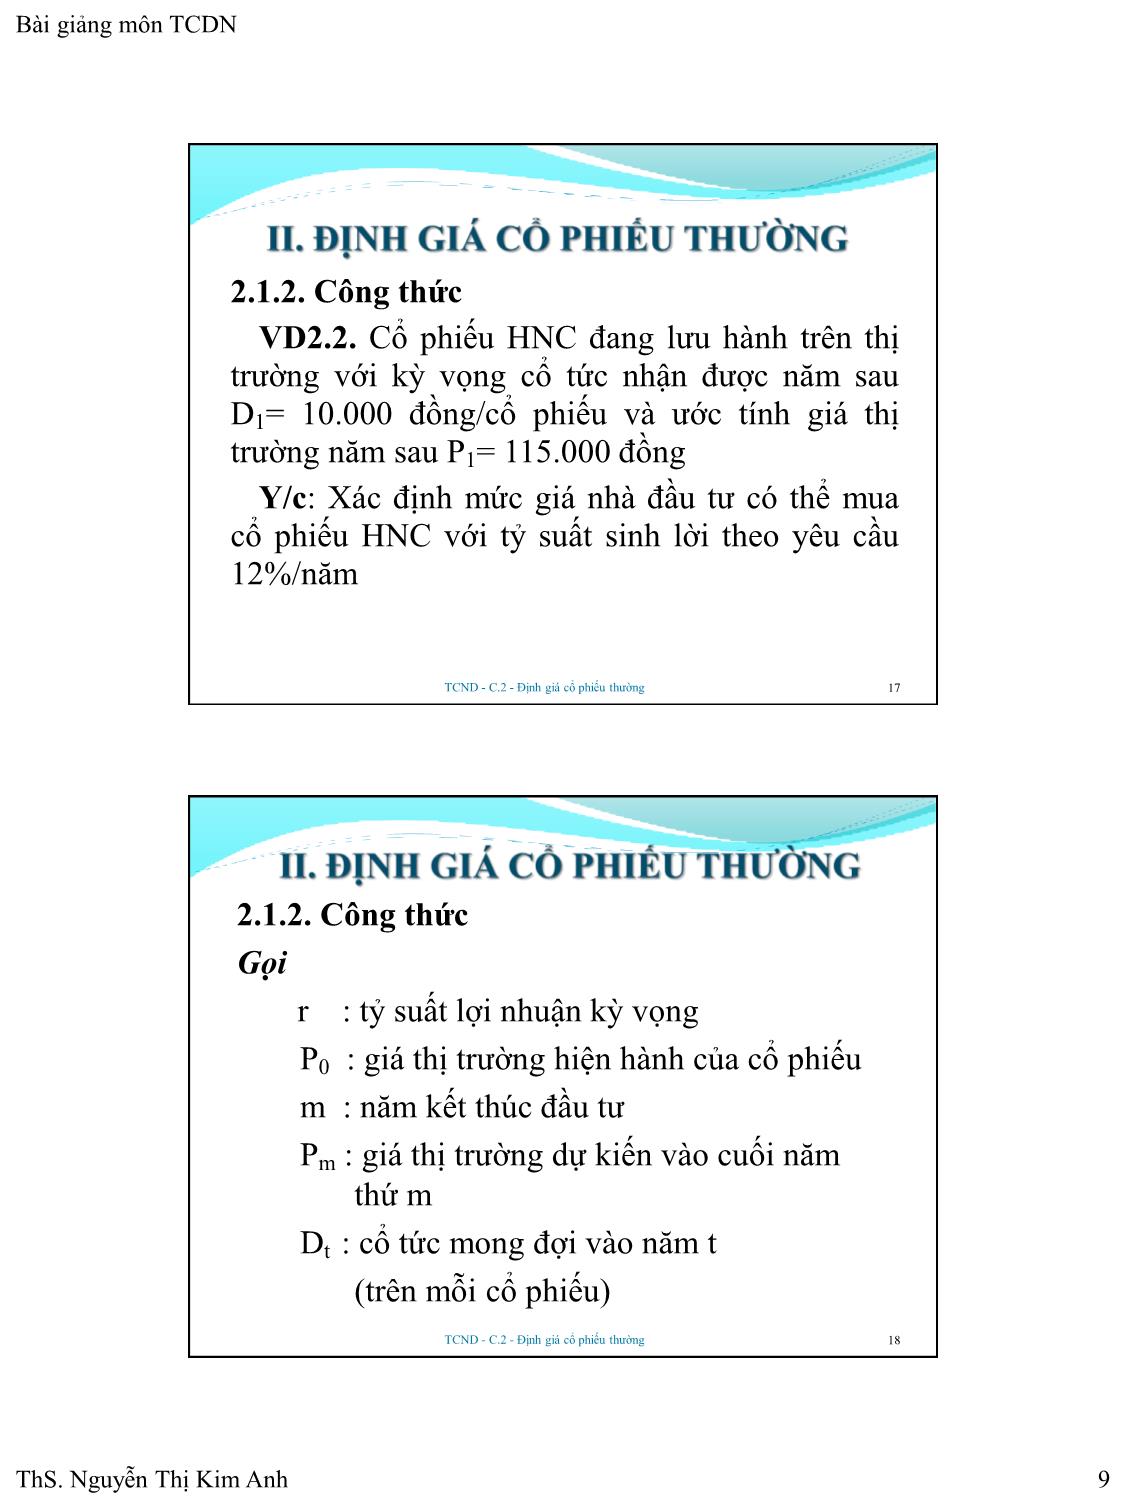 Bài giảng Tài chính doanh nghiệp - Chương 2: Định giá cổ phiếu thường - Nguyễn Thị Kim Anh trang 9